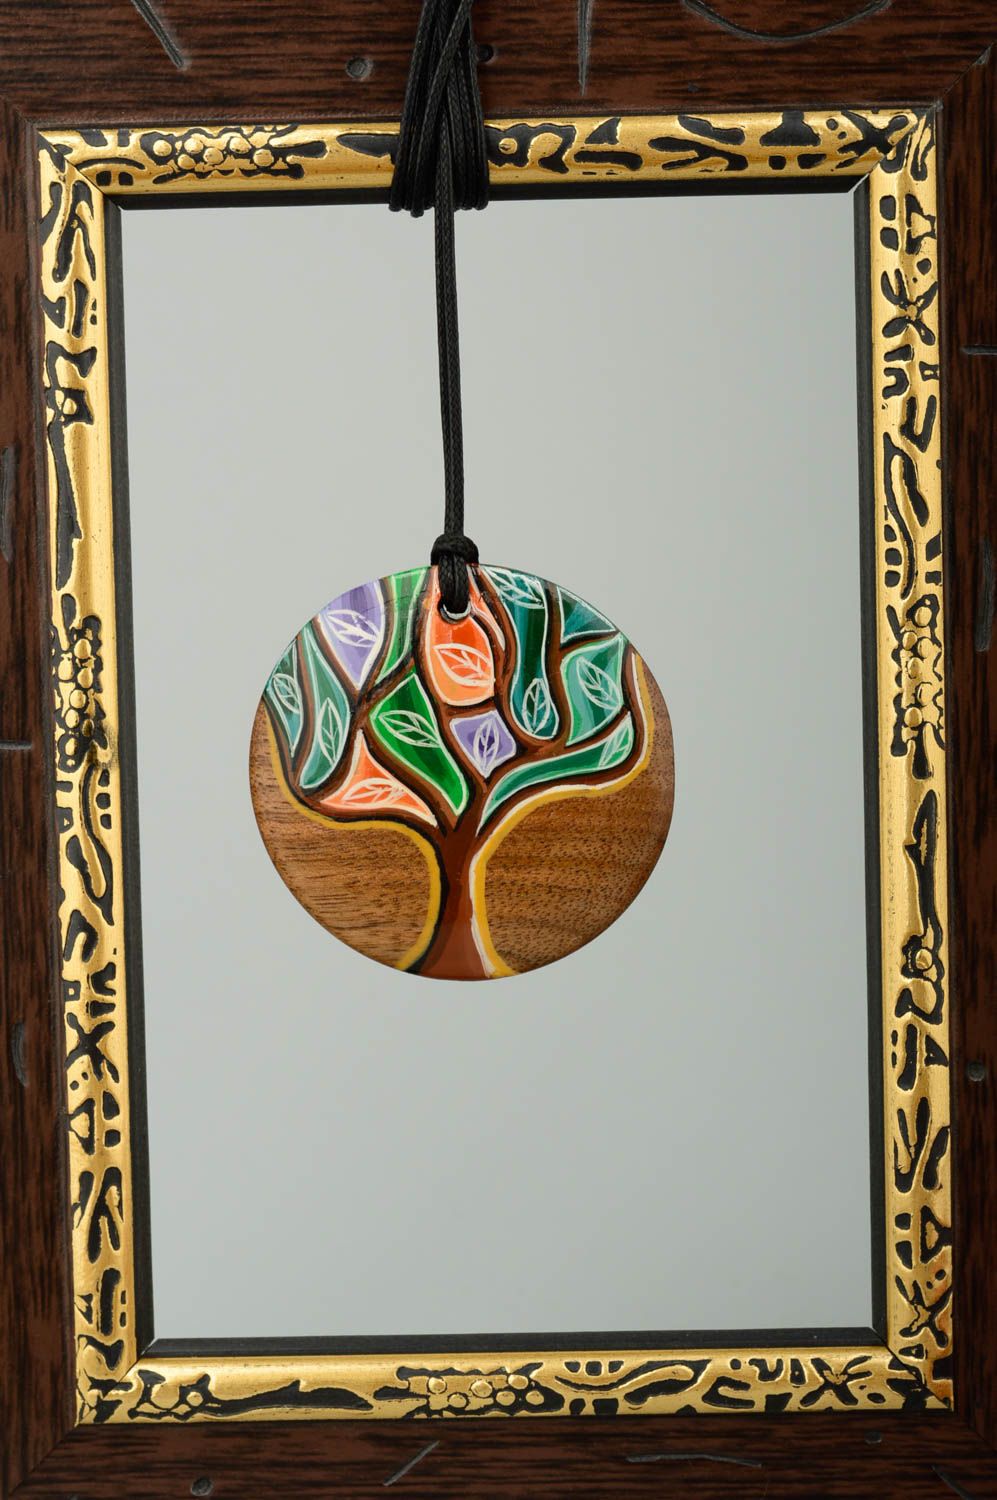 Аксессуар из дерева кулон ручной работы украшение на шею с росписью Дерево жизни фото 1